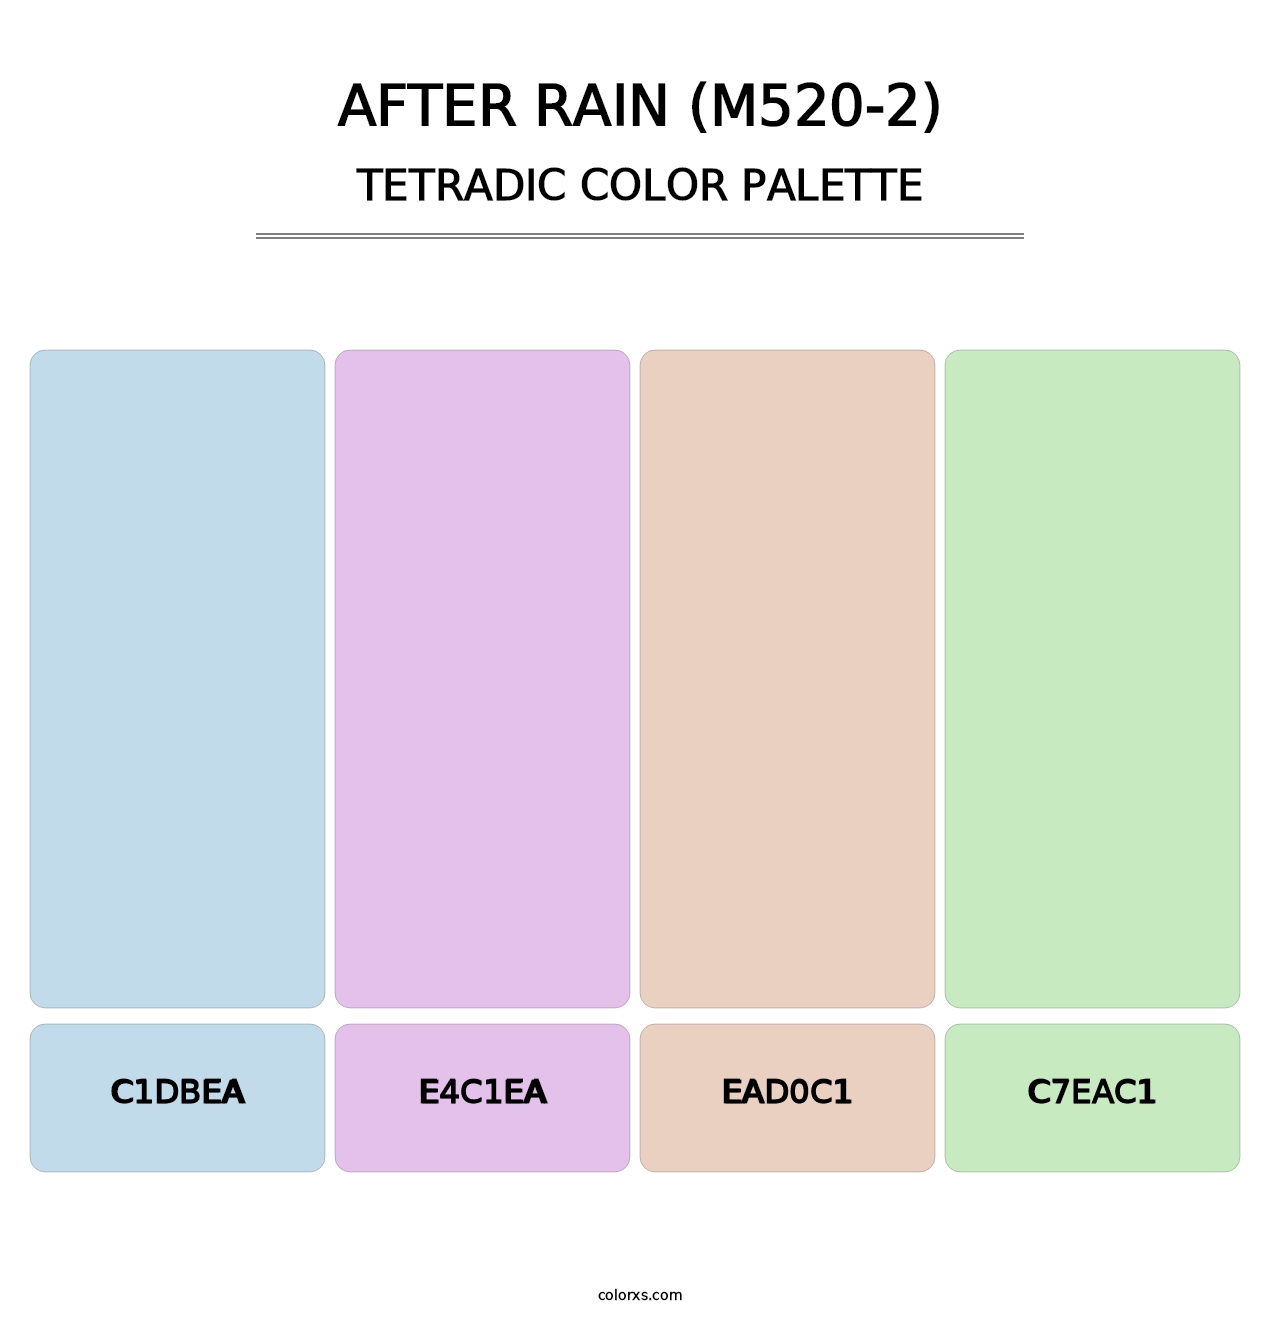 After Rain (M520-2) - Tetradic Color Palette